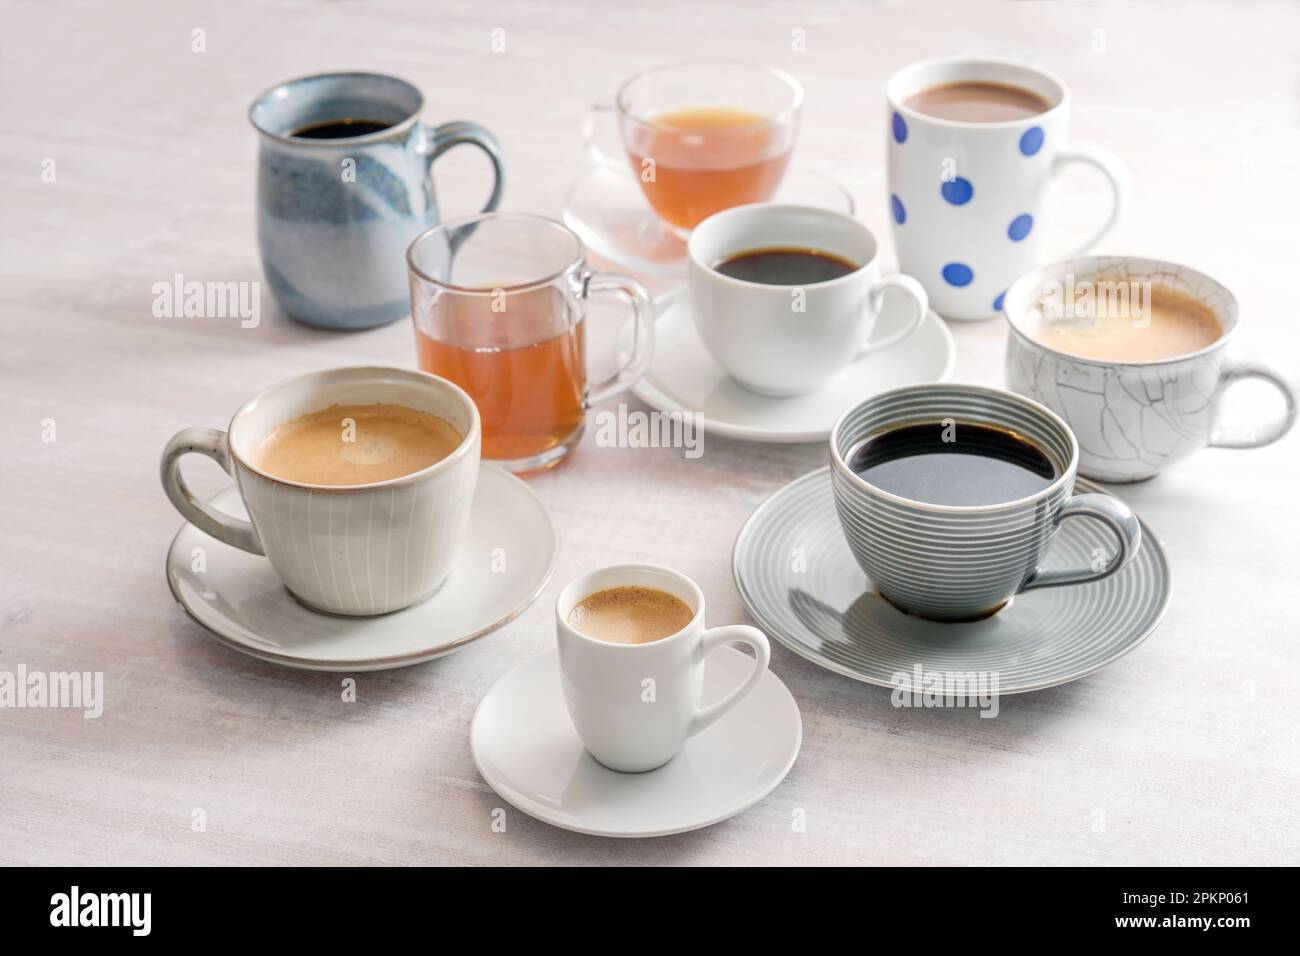 Gruppo di tazze e tazze diverse con caffè e tè bevande su un tavolo leggero, messa a fuoco selezionata, profondità di campo ristretta Foto Stock